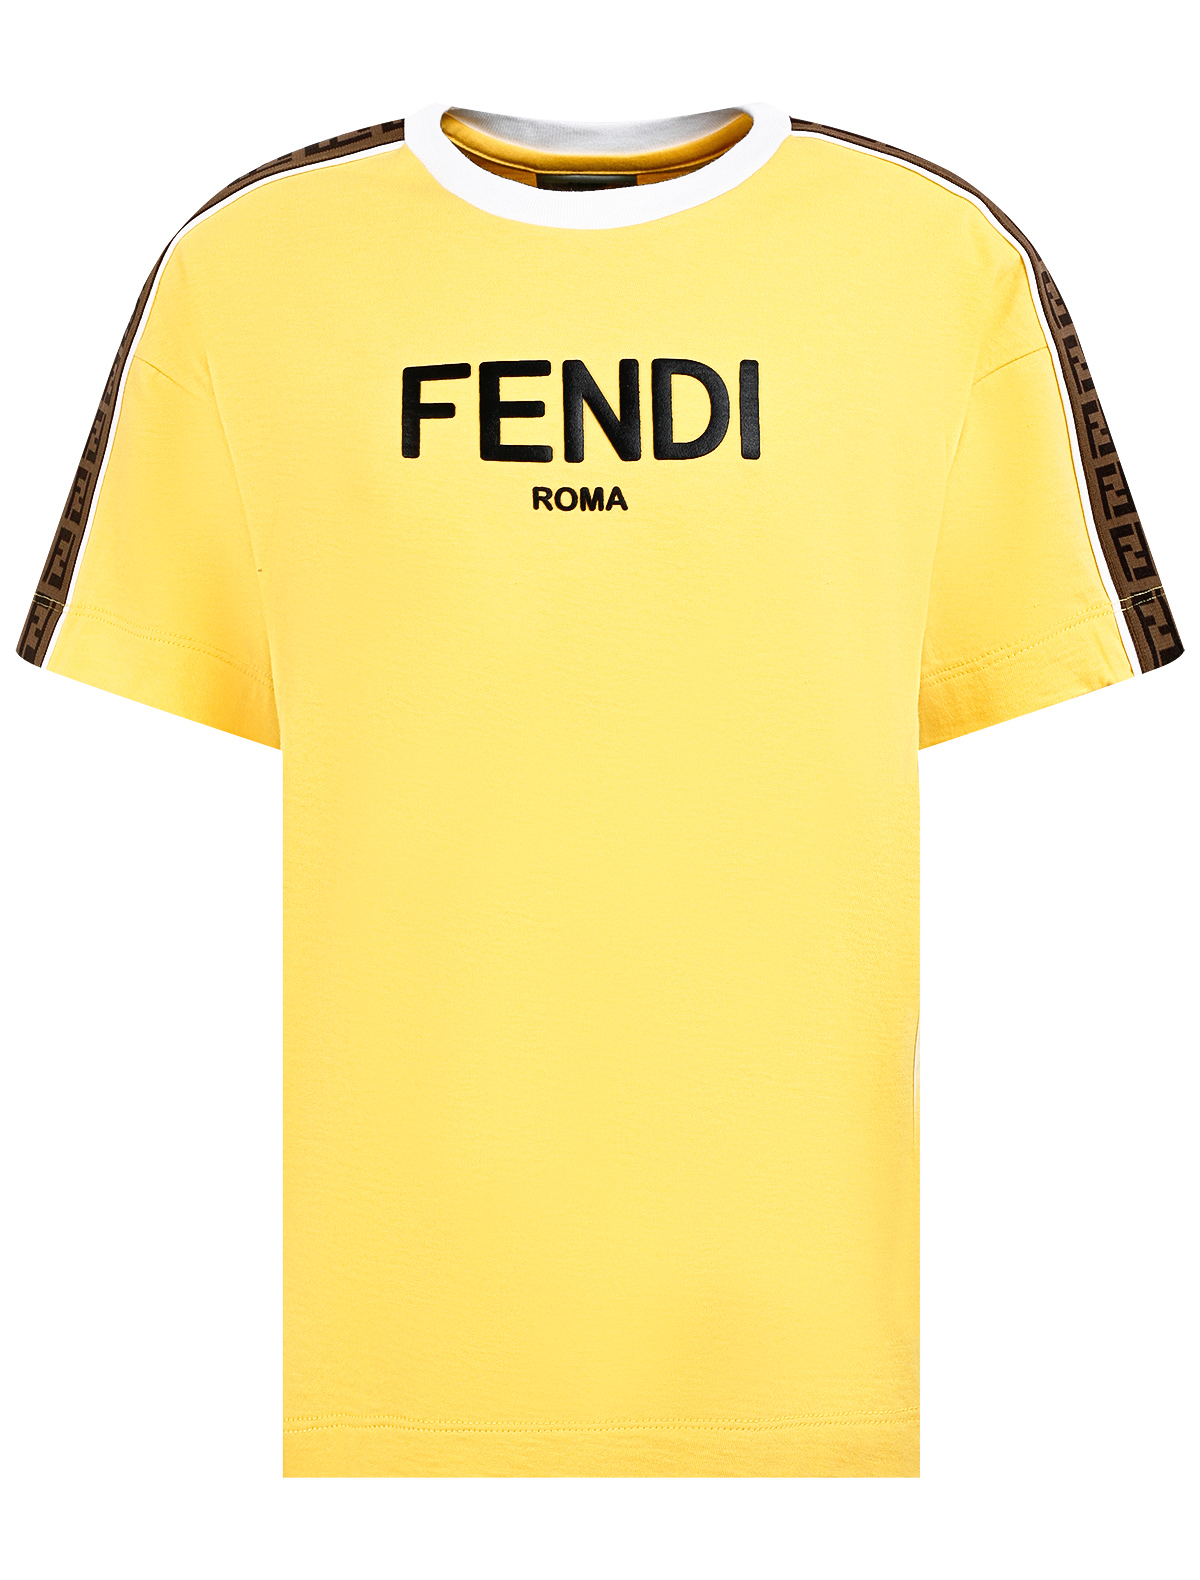 Футболка Fendi желтого цвета